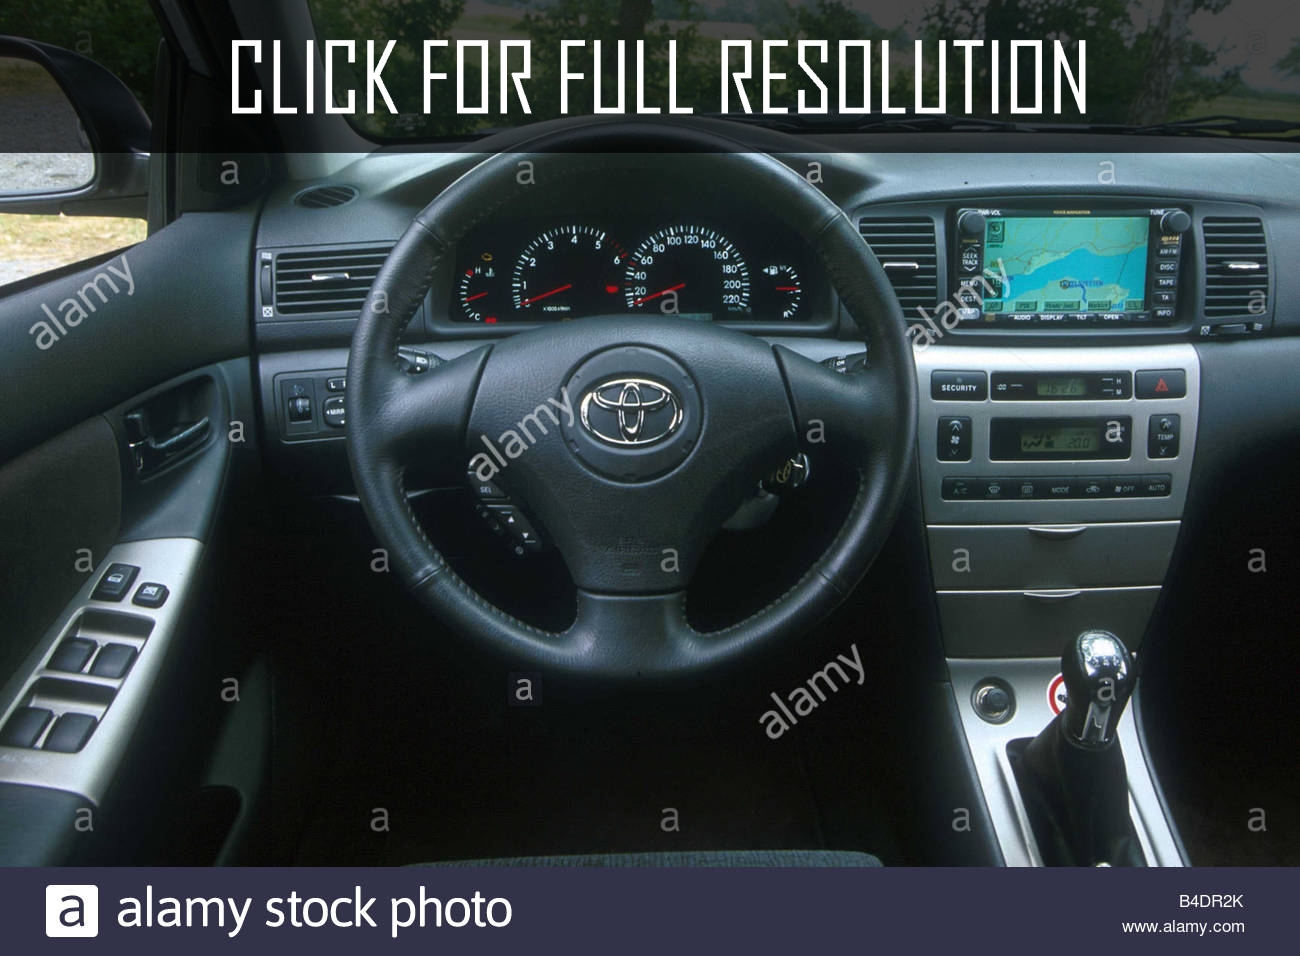 2002 Toyota Corolla Hatchback